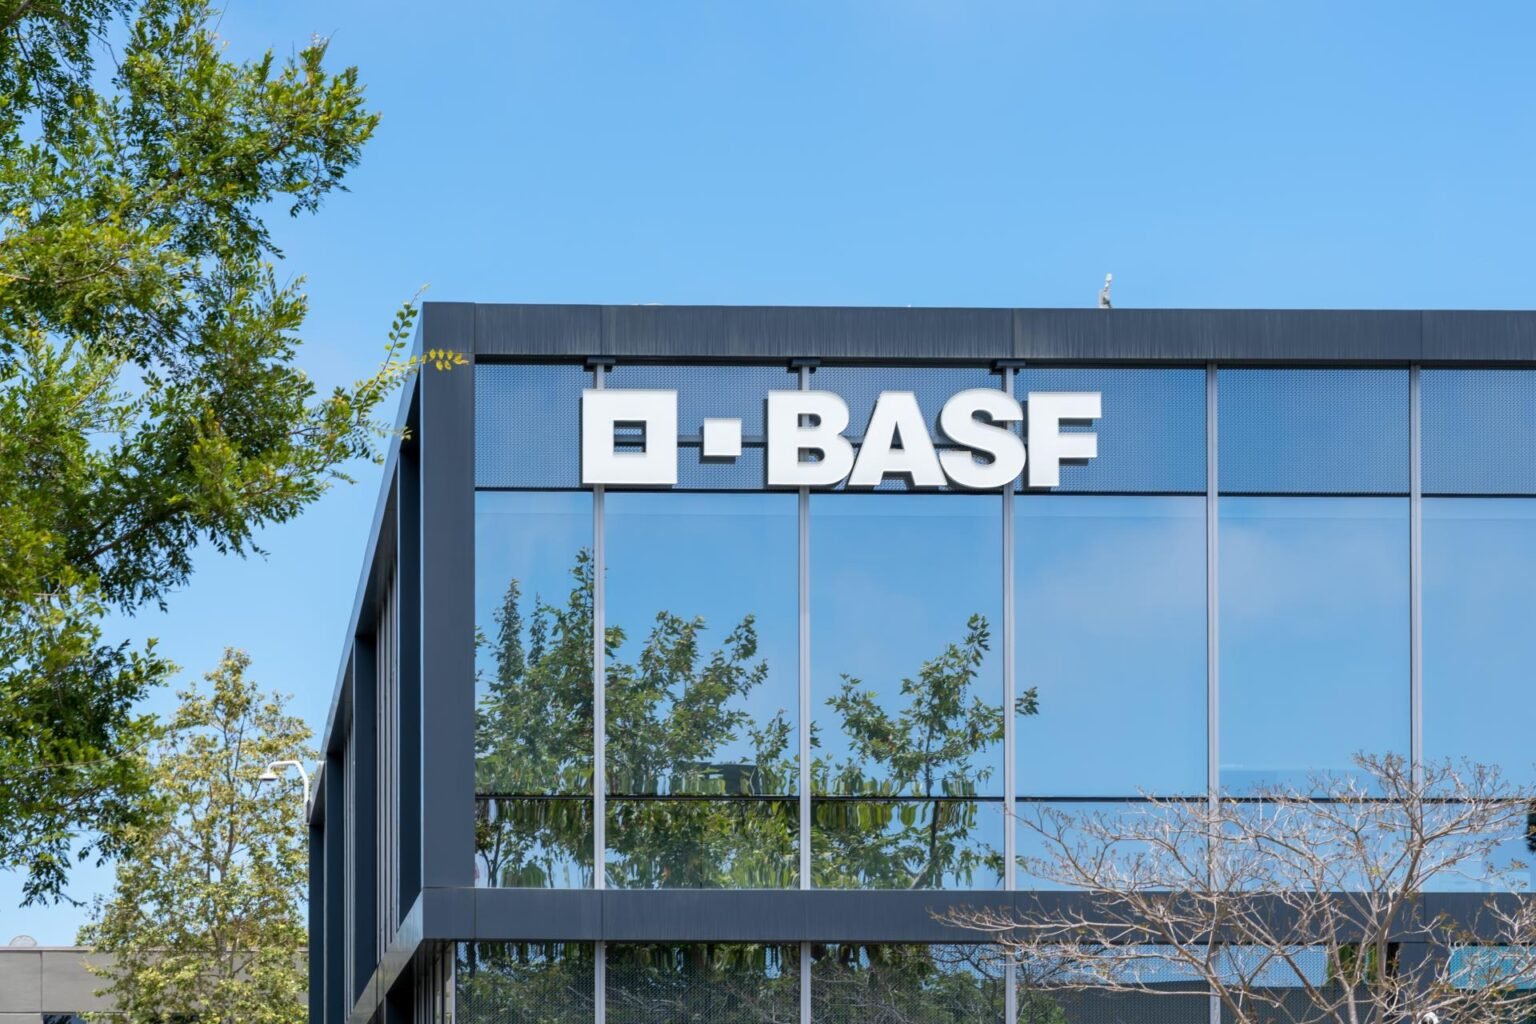 BASF: Eigenständige Einheit für Batteriematerialien